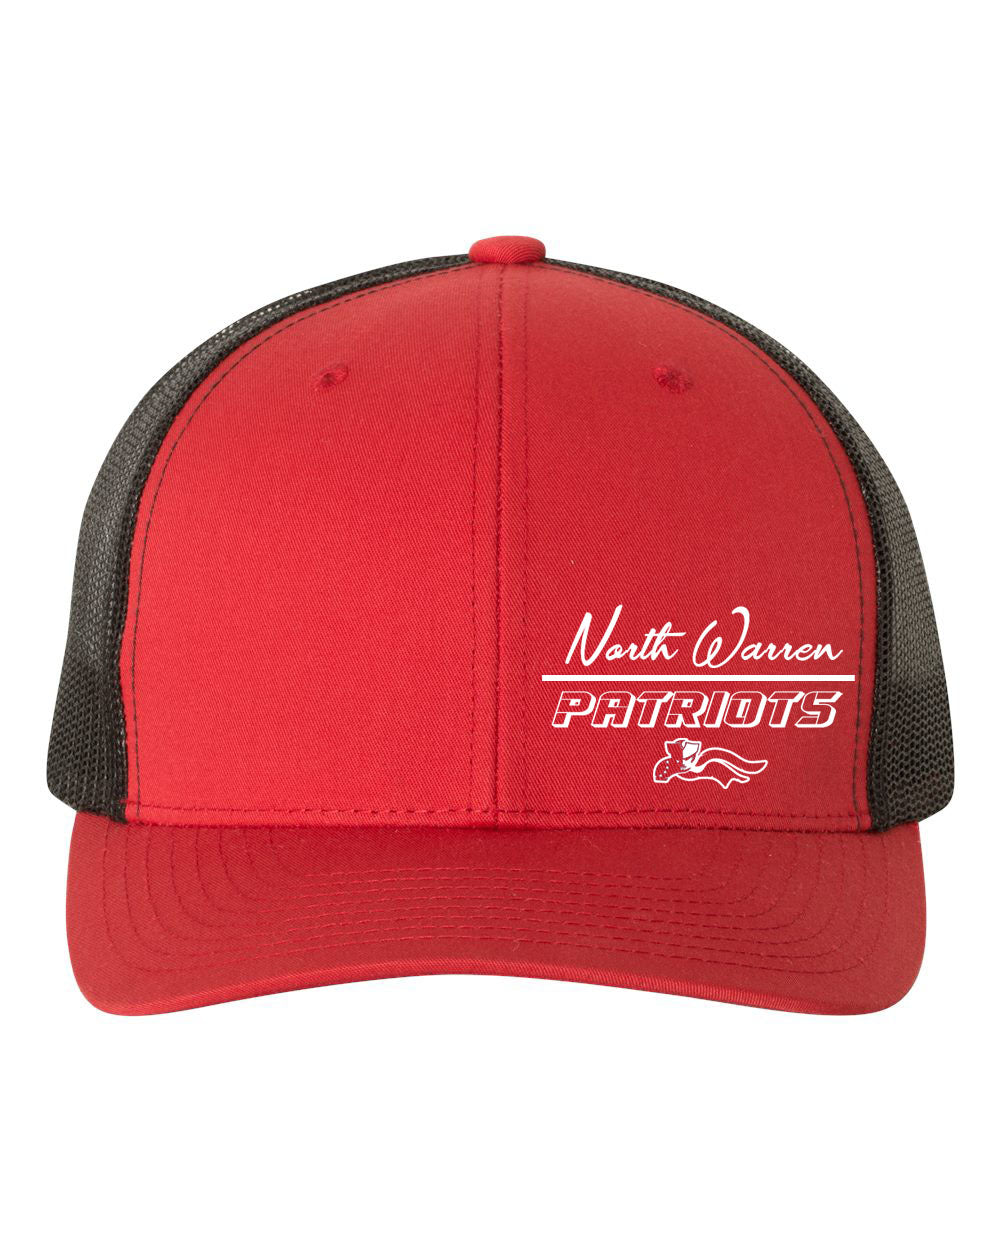 North Warren Design 10 Trucker Hat